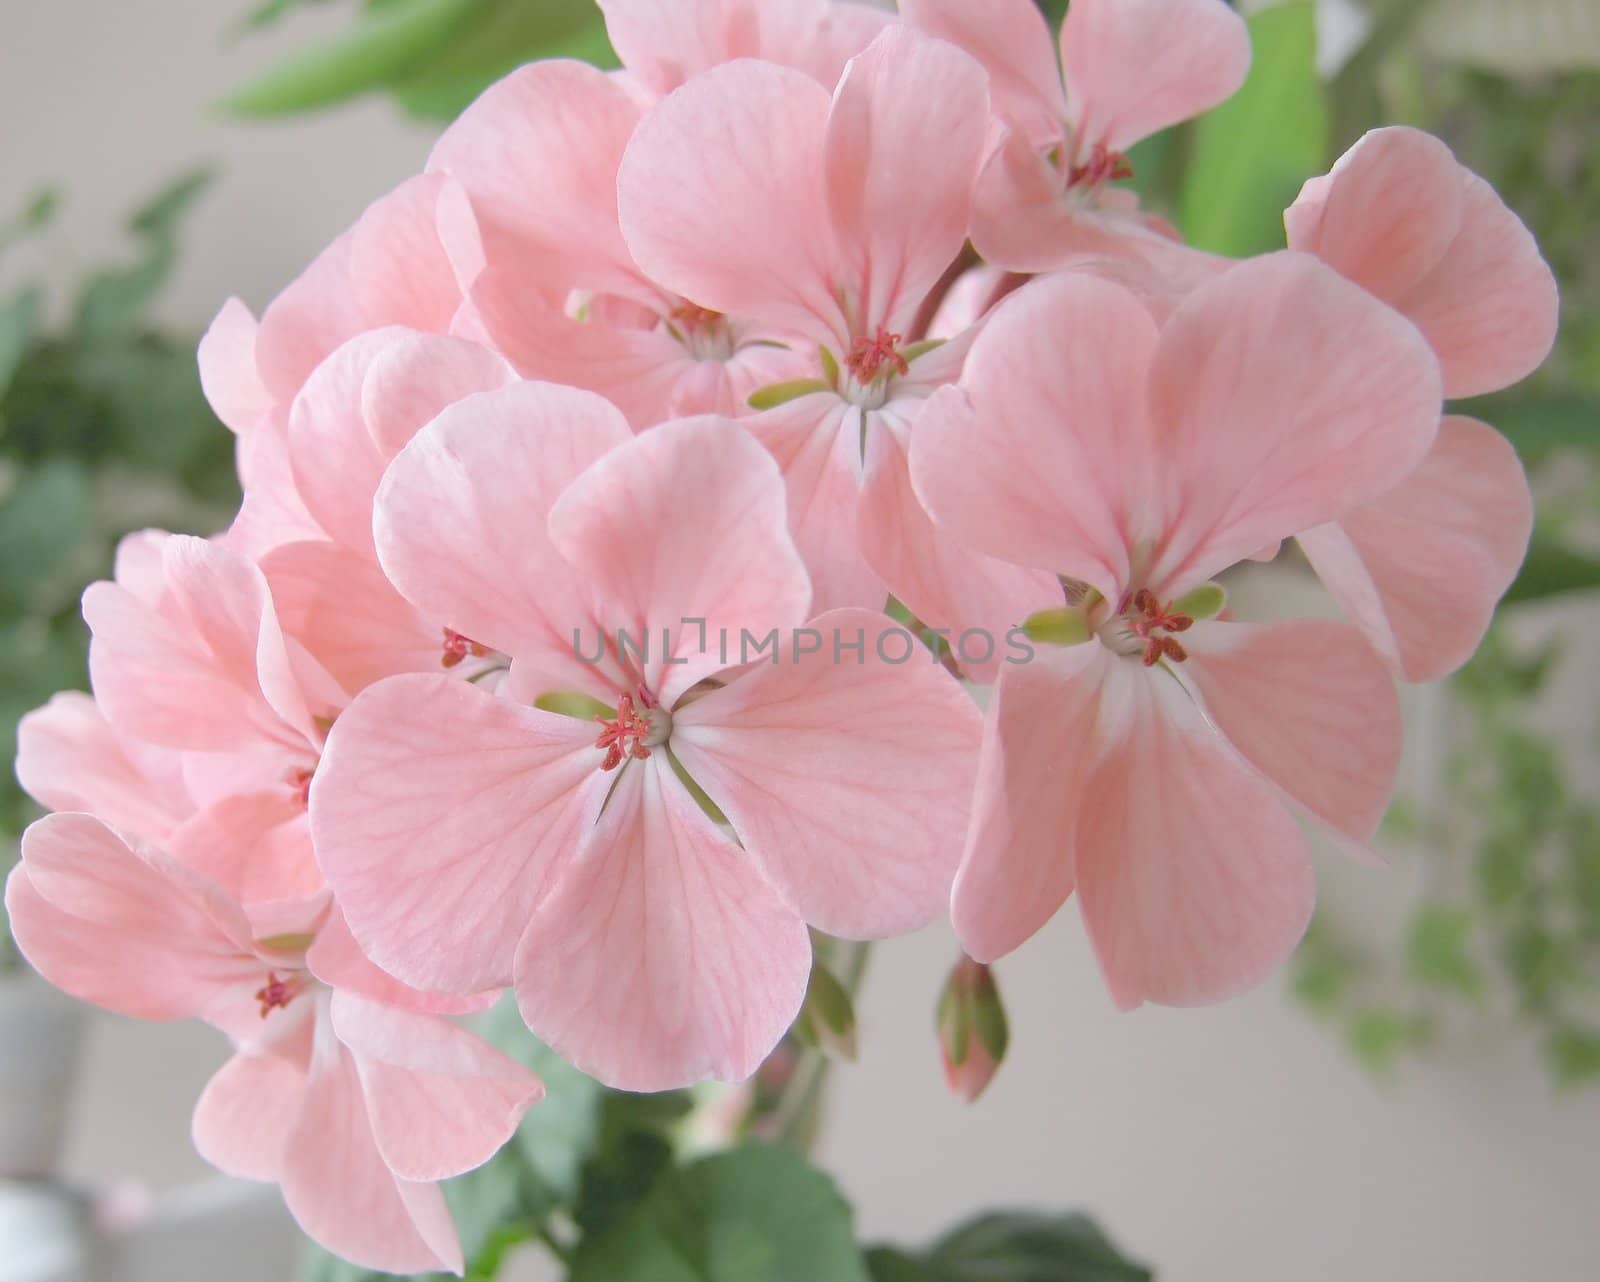 Blossom pink geranium. Shallow DOF.